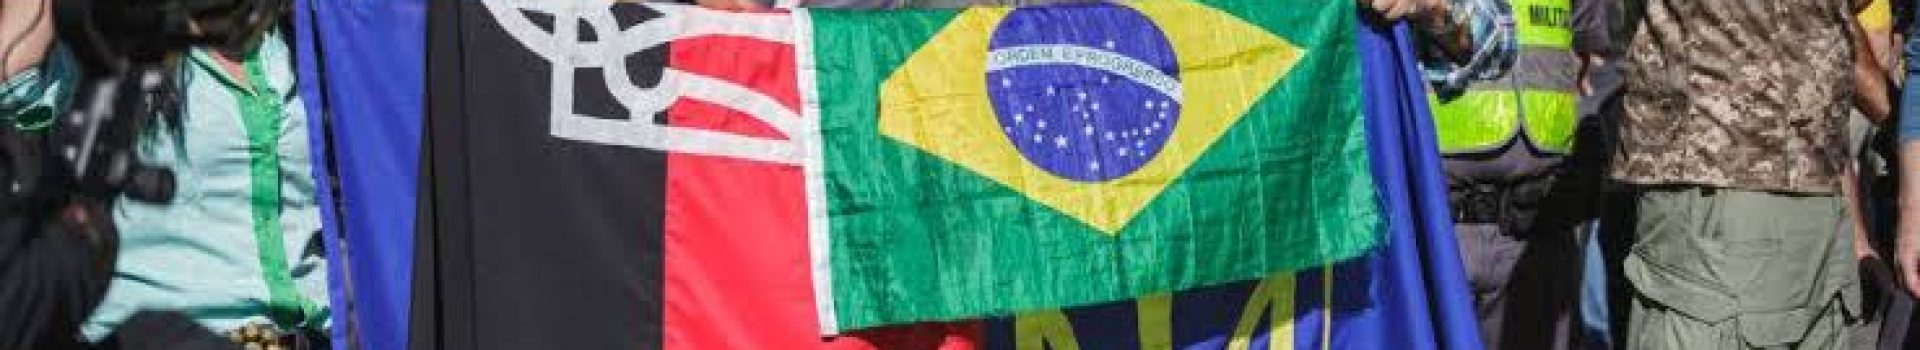 Neonazistas brasileiros com a bandeiras supremacistas ucraniana